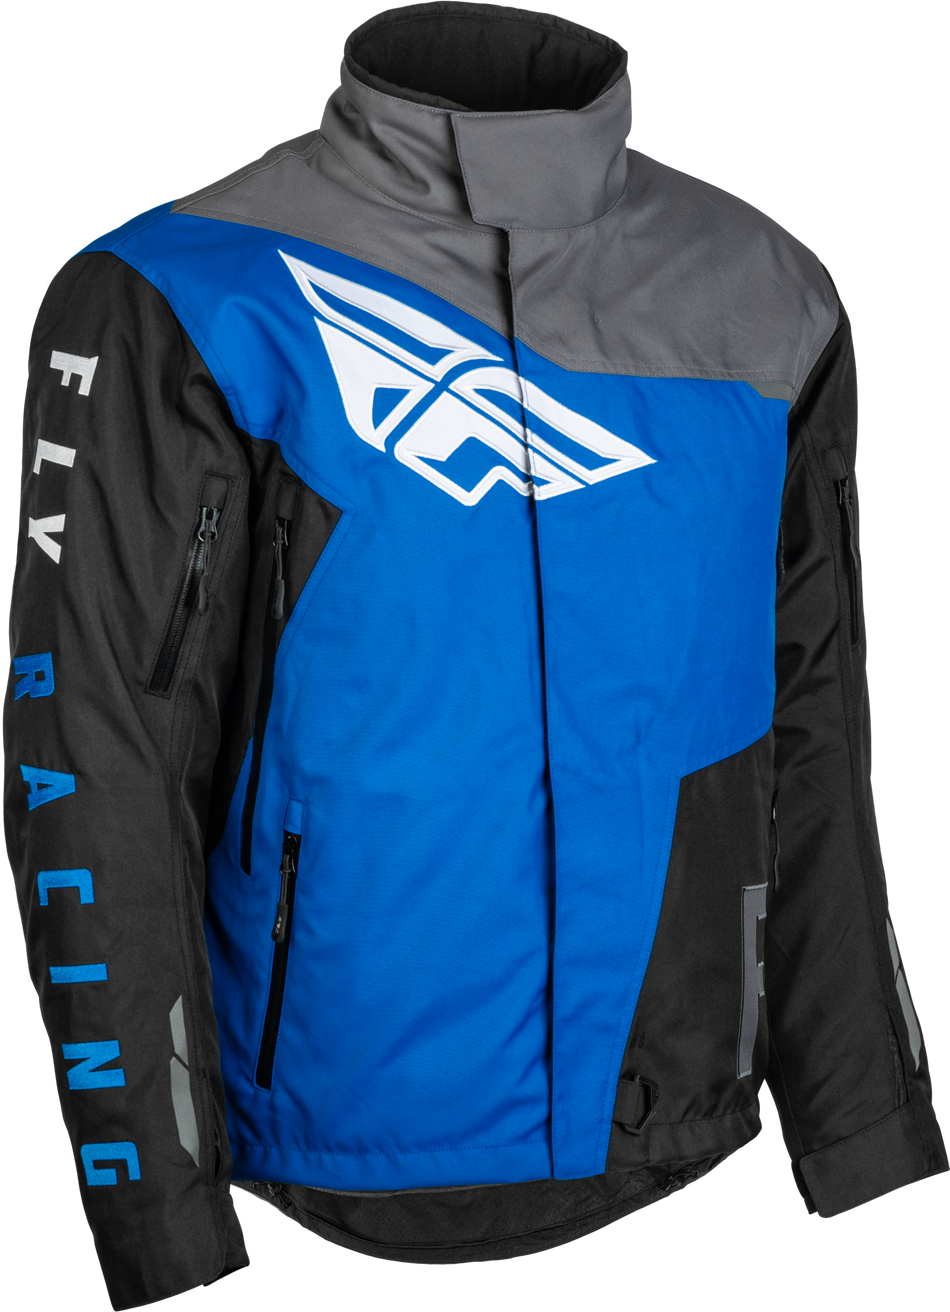 FLY RACING Youth Snx Pro Jacket Black/Grey/Blue Ym 470-4116YM